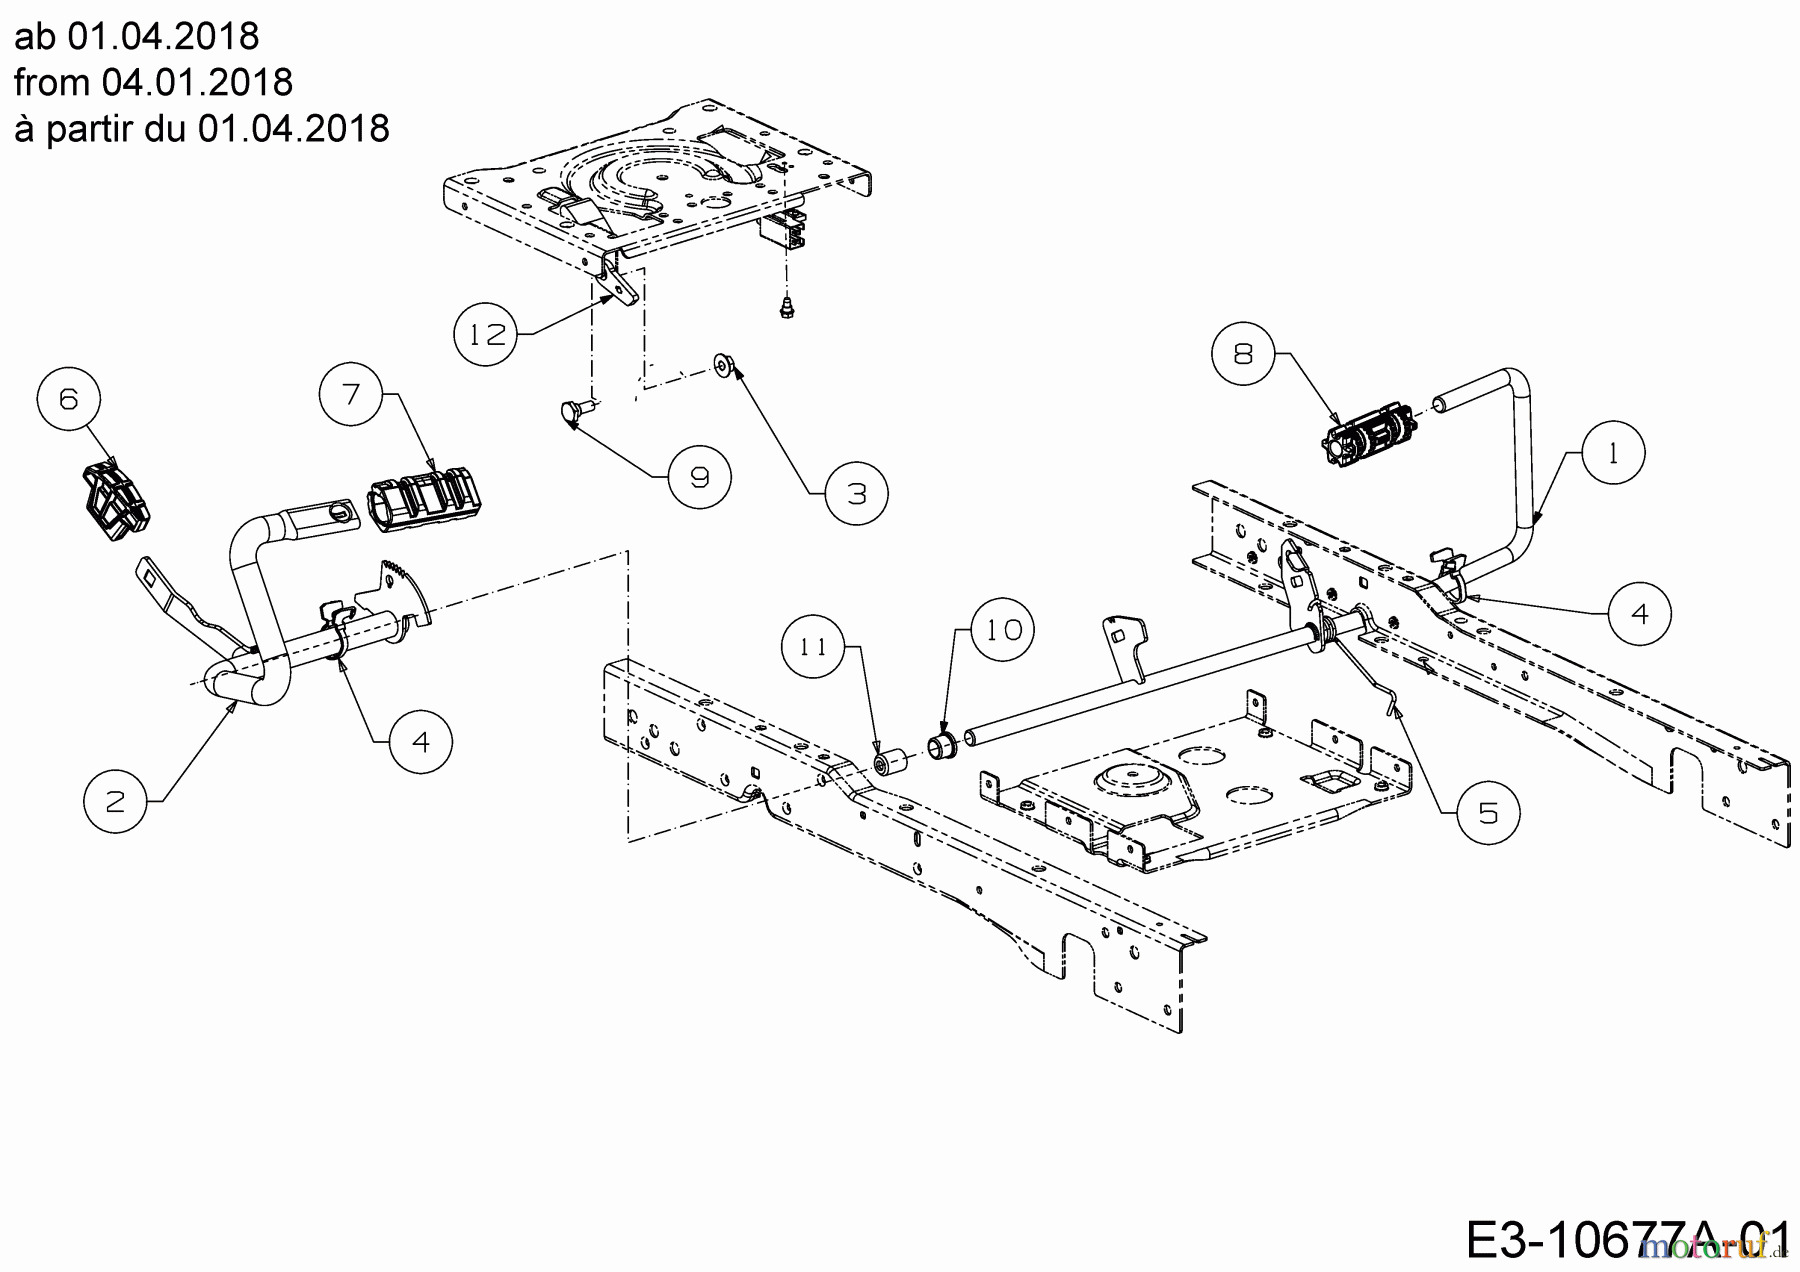  Cub Cadet Lawn tractors XT1 OS96 13A8A1CF603  (2018) Pedals from 04.01.2018